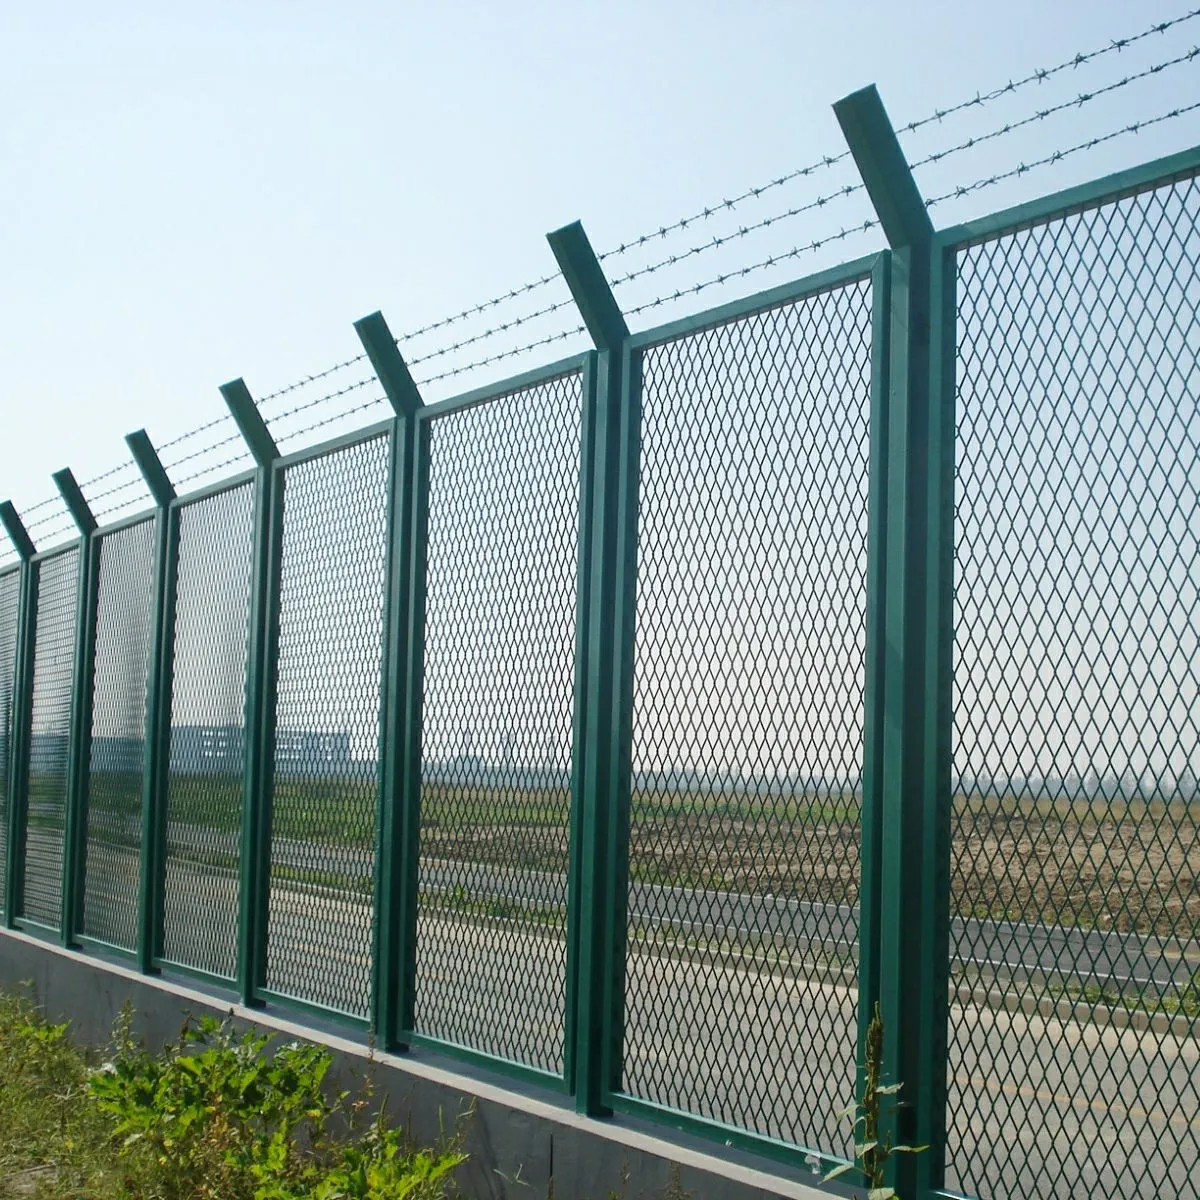 Grilles de clôture de sécurité en fer enduit de PVC de haute qualité Panneaux muraux décoratifs en métal pour clôture de ferme fabriqués à partir de matériaux durables